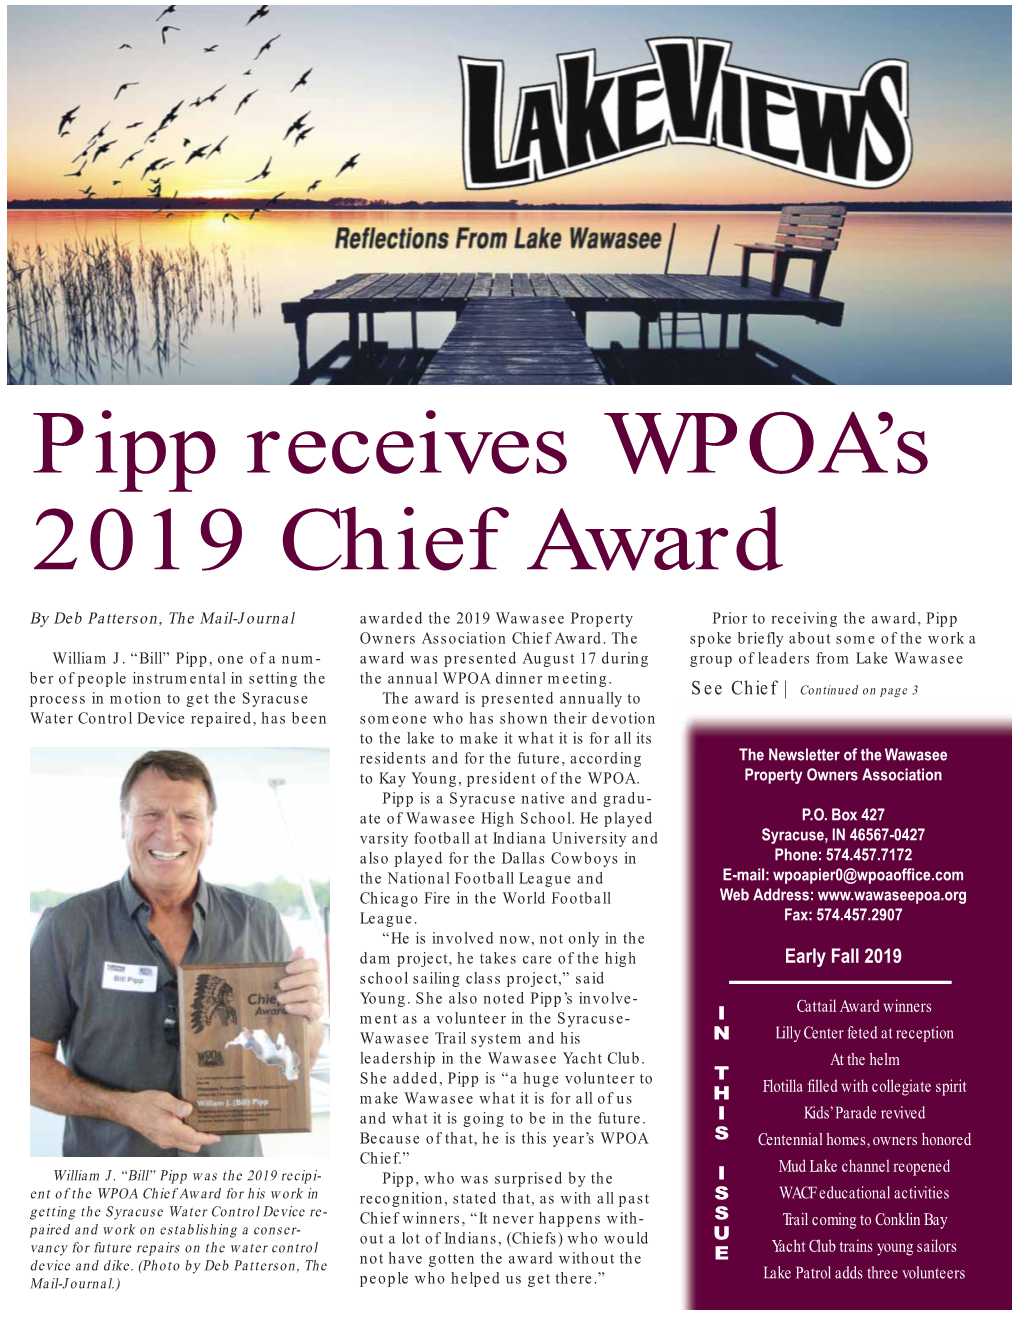 Pipp Receives WPOA's 2019 Chief Award